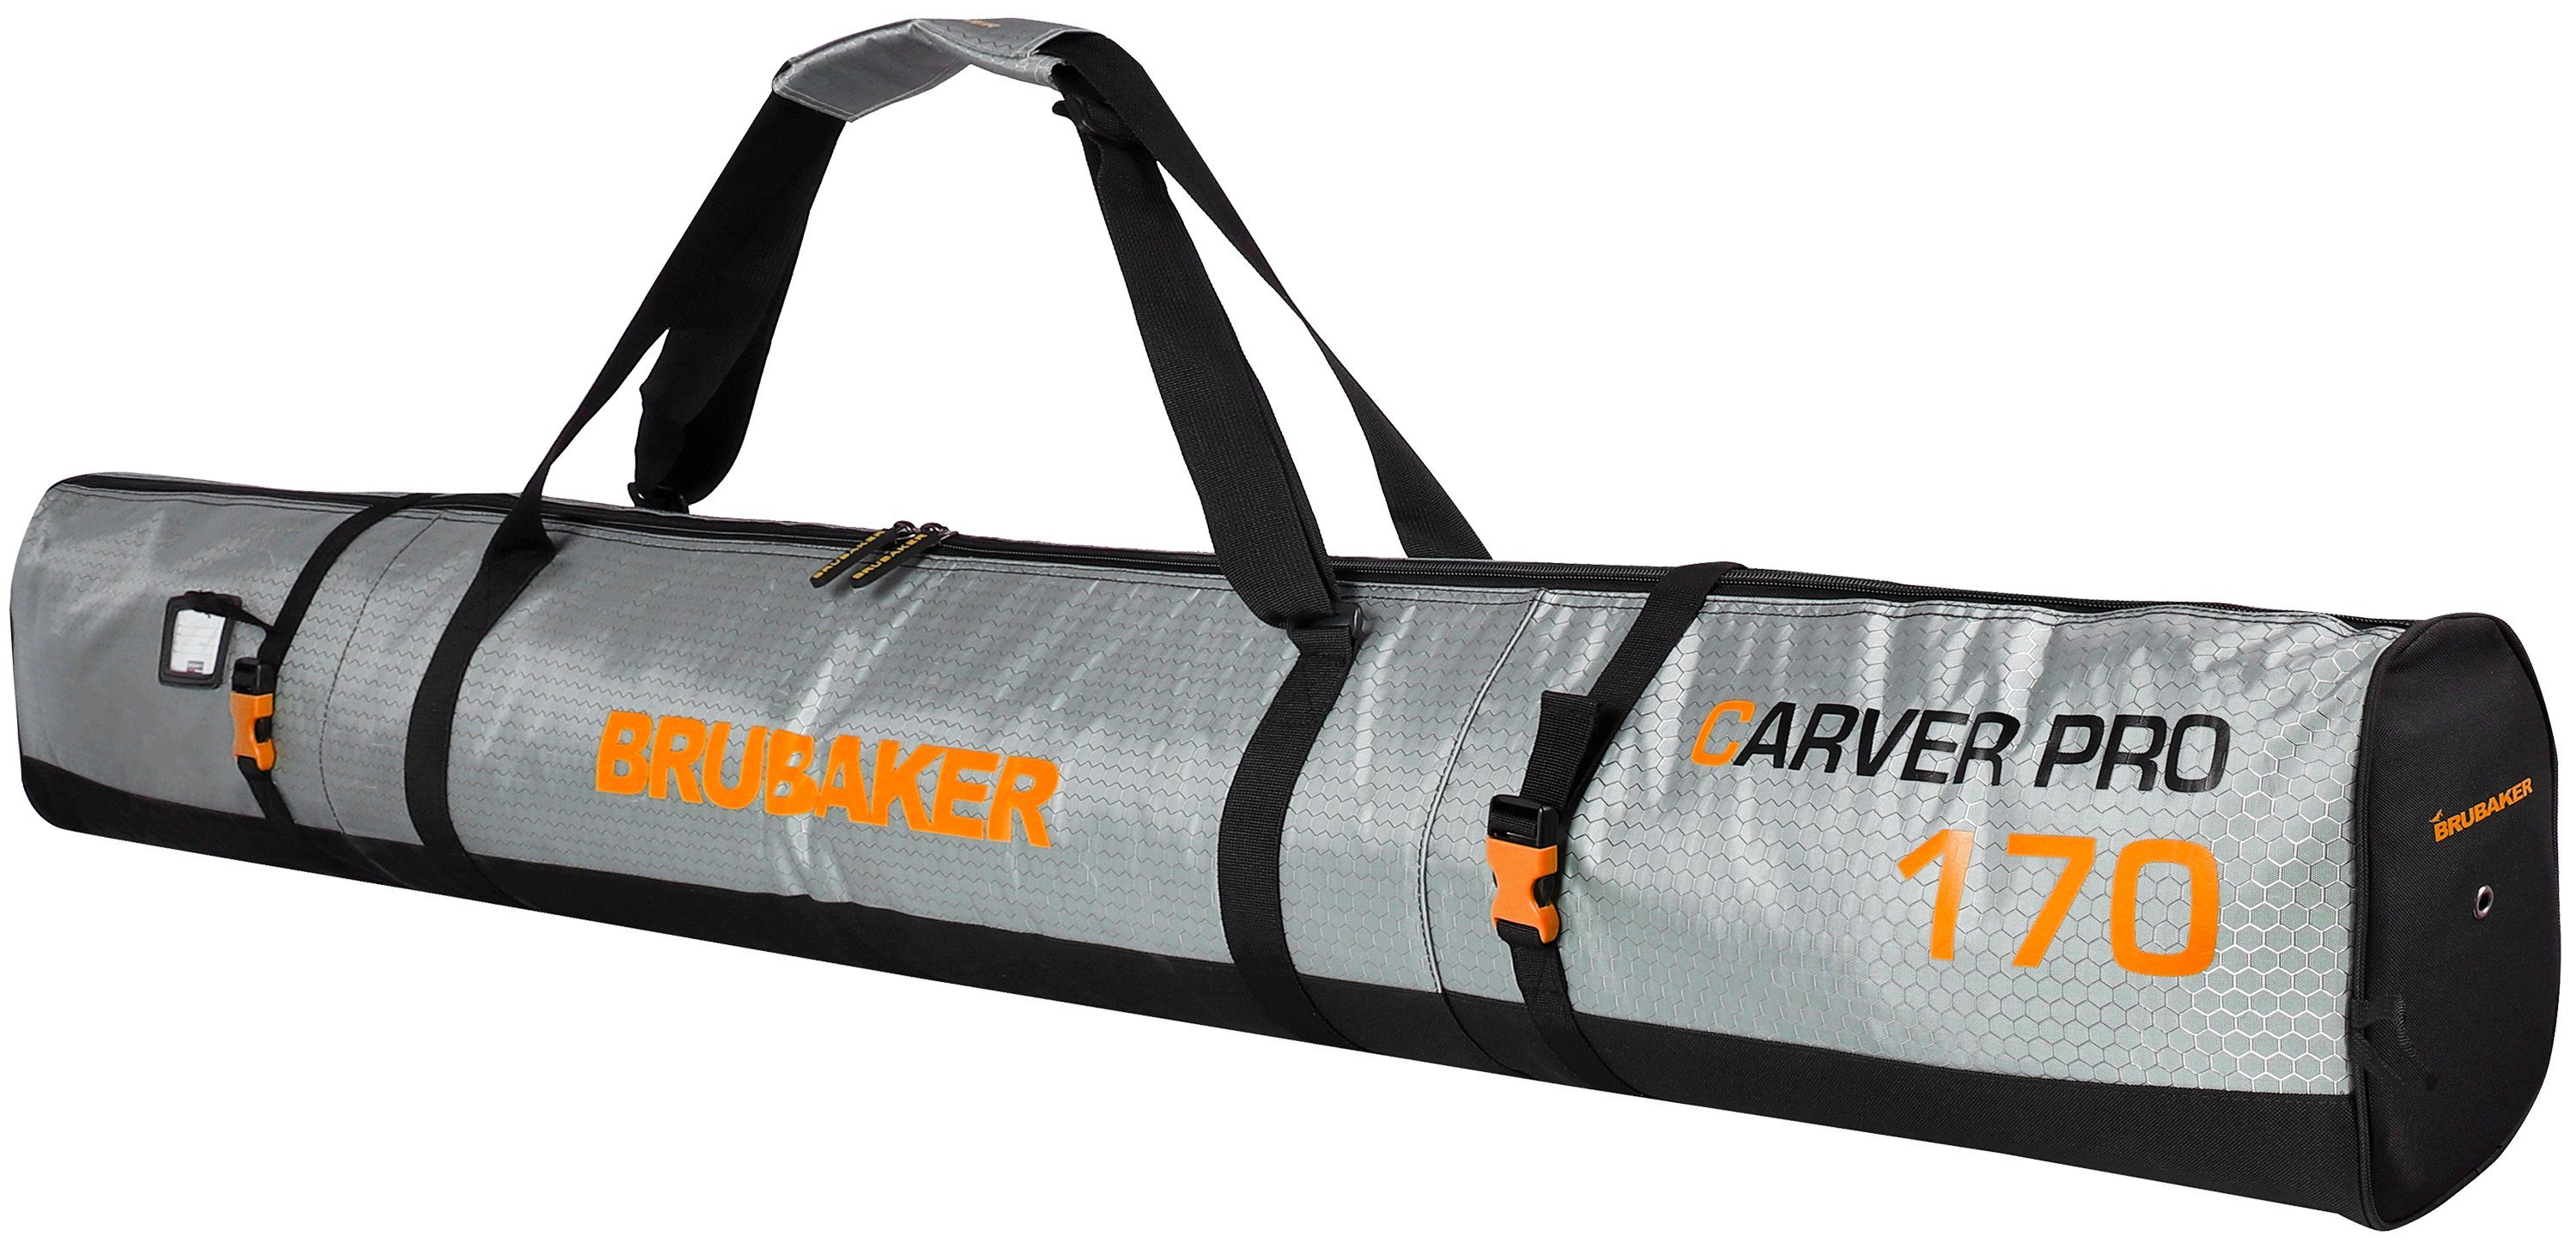 BRUBAKER Sporttasche Carver Tec Pro Skitasche (1-tlg., reißfest und schnittfest), gepolsterter Skisack mit Zipperverschluss, Skibag für Skier und Skistöcke, Ski Tasche